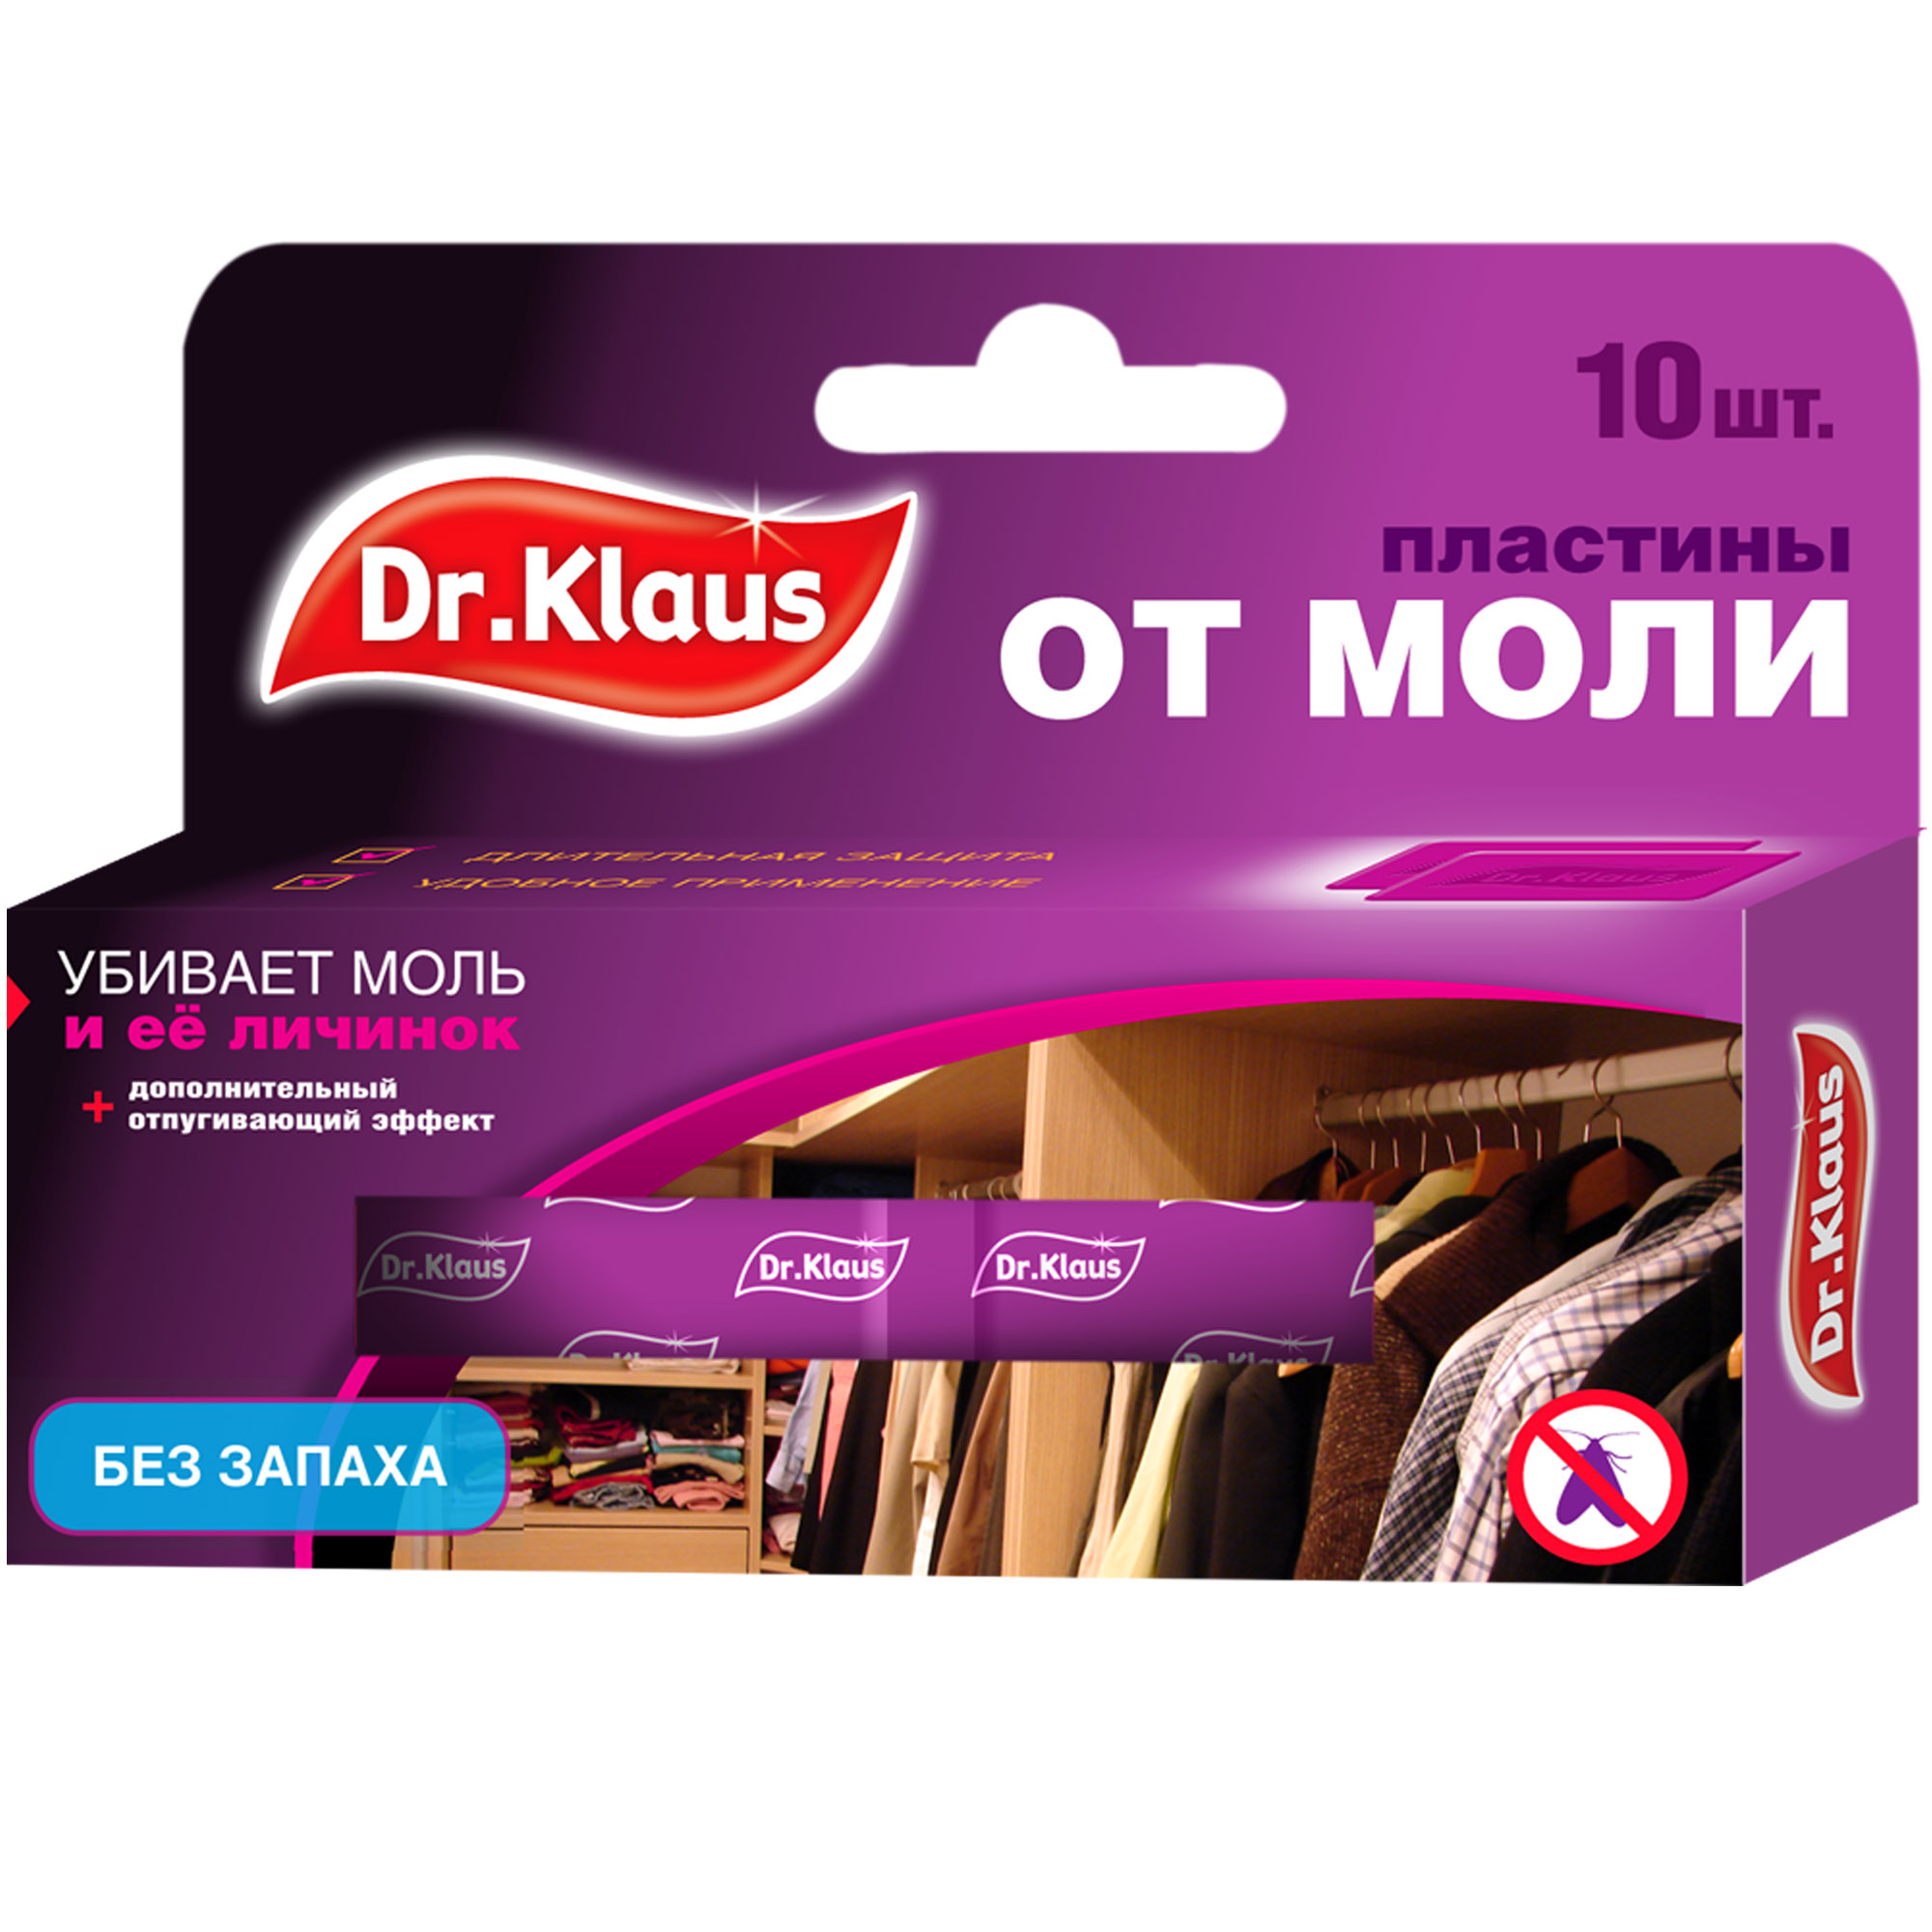 Пластины Dr.Klaus от моли и её личинок (без запаха), 10 шт. пластины от моли dr klaus